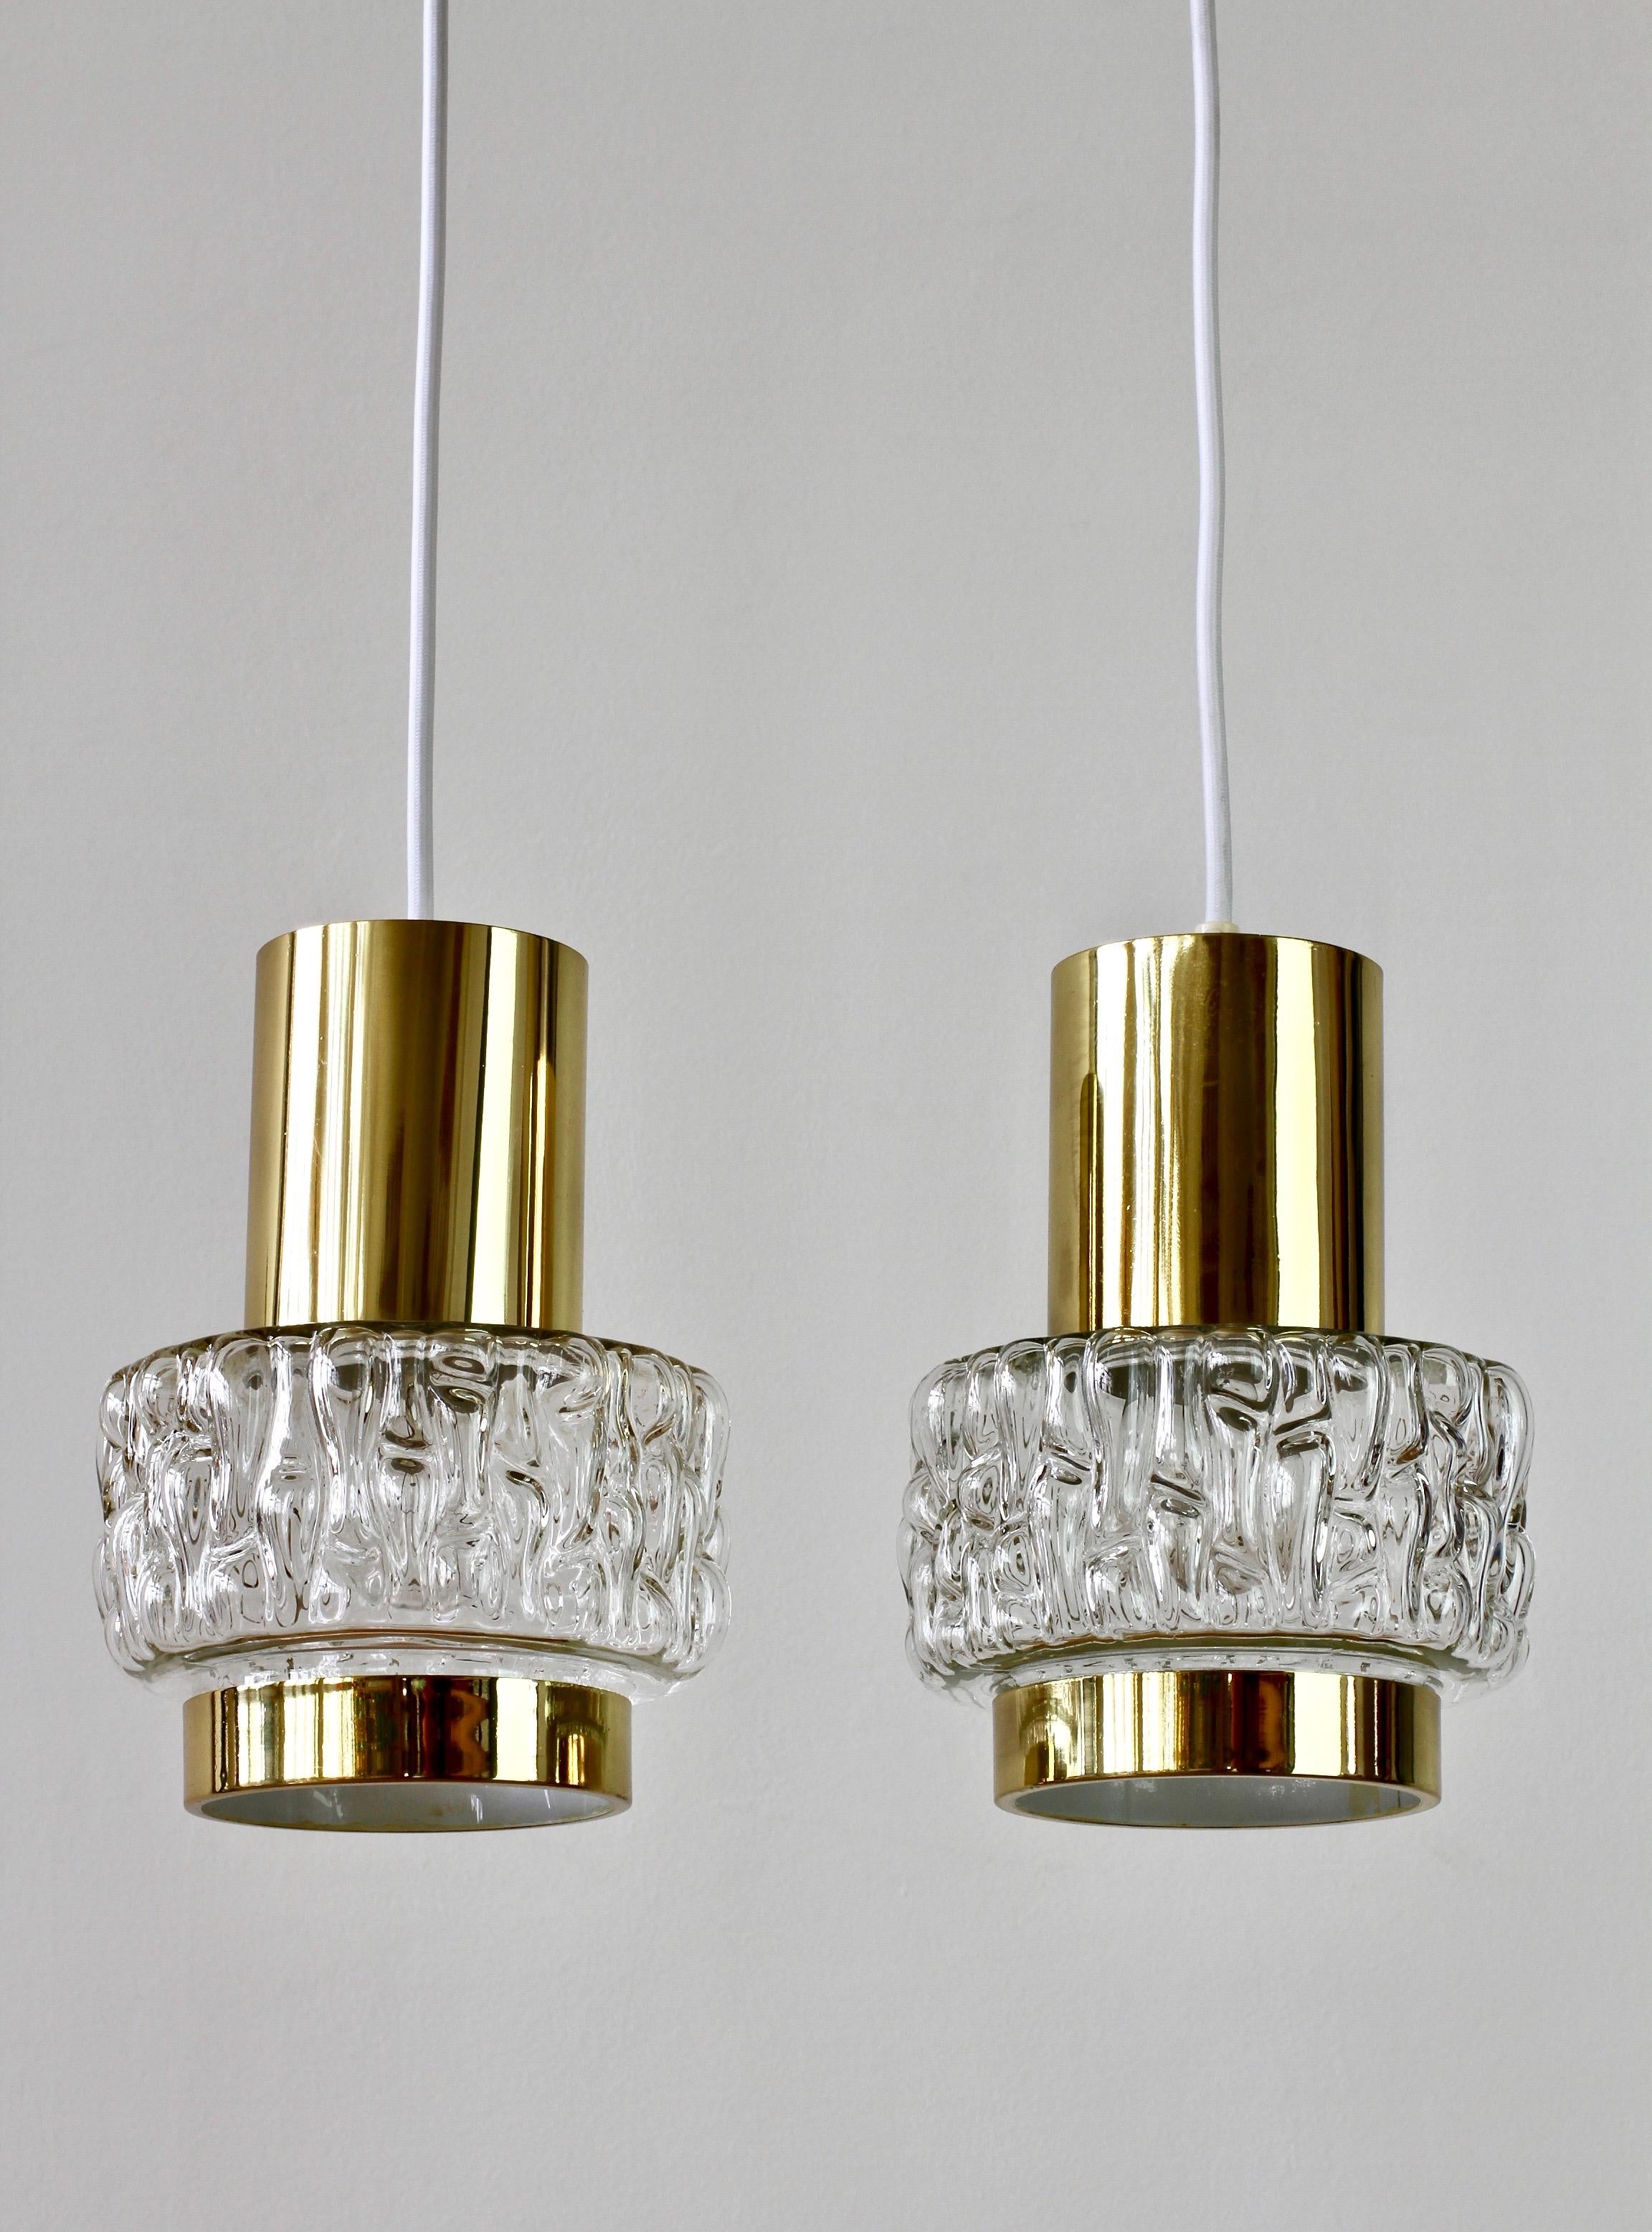 German Rupert Nikoll Rare Pair of Austrian Brass & Textured Glass Pendant Lights Lamps For Sale